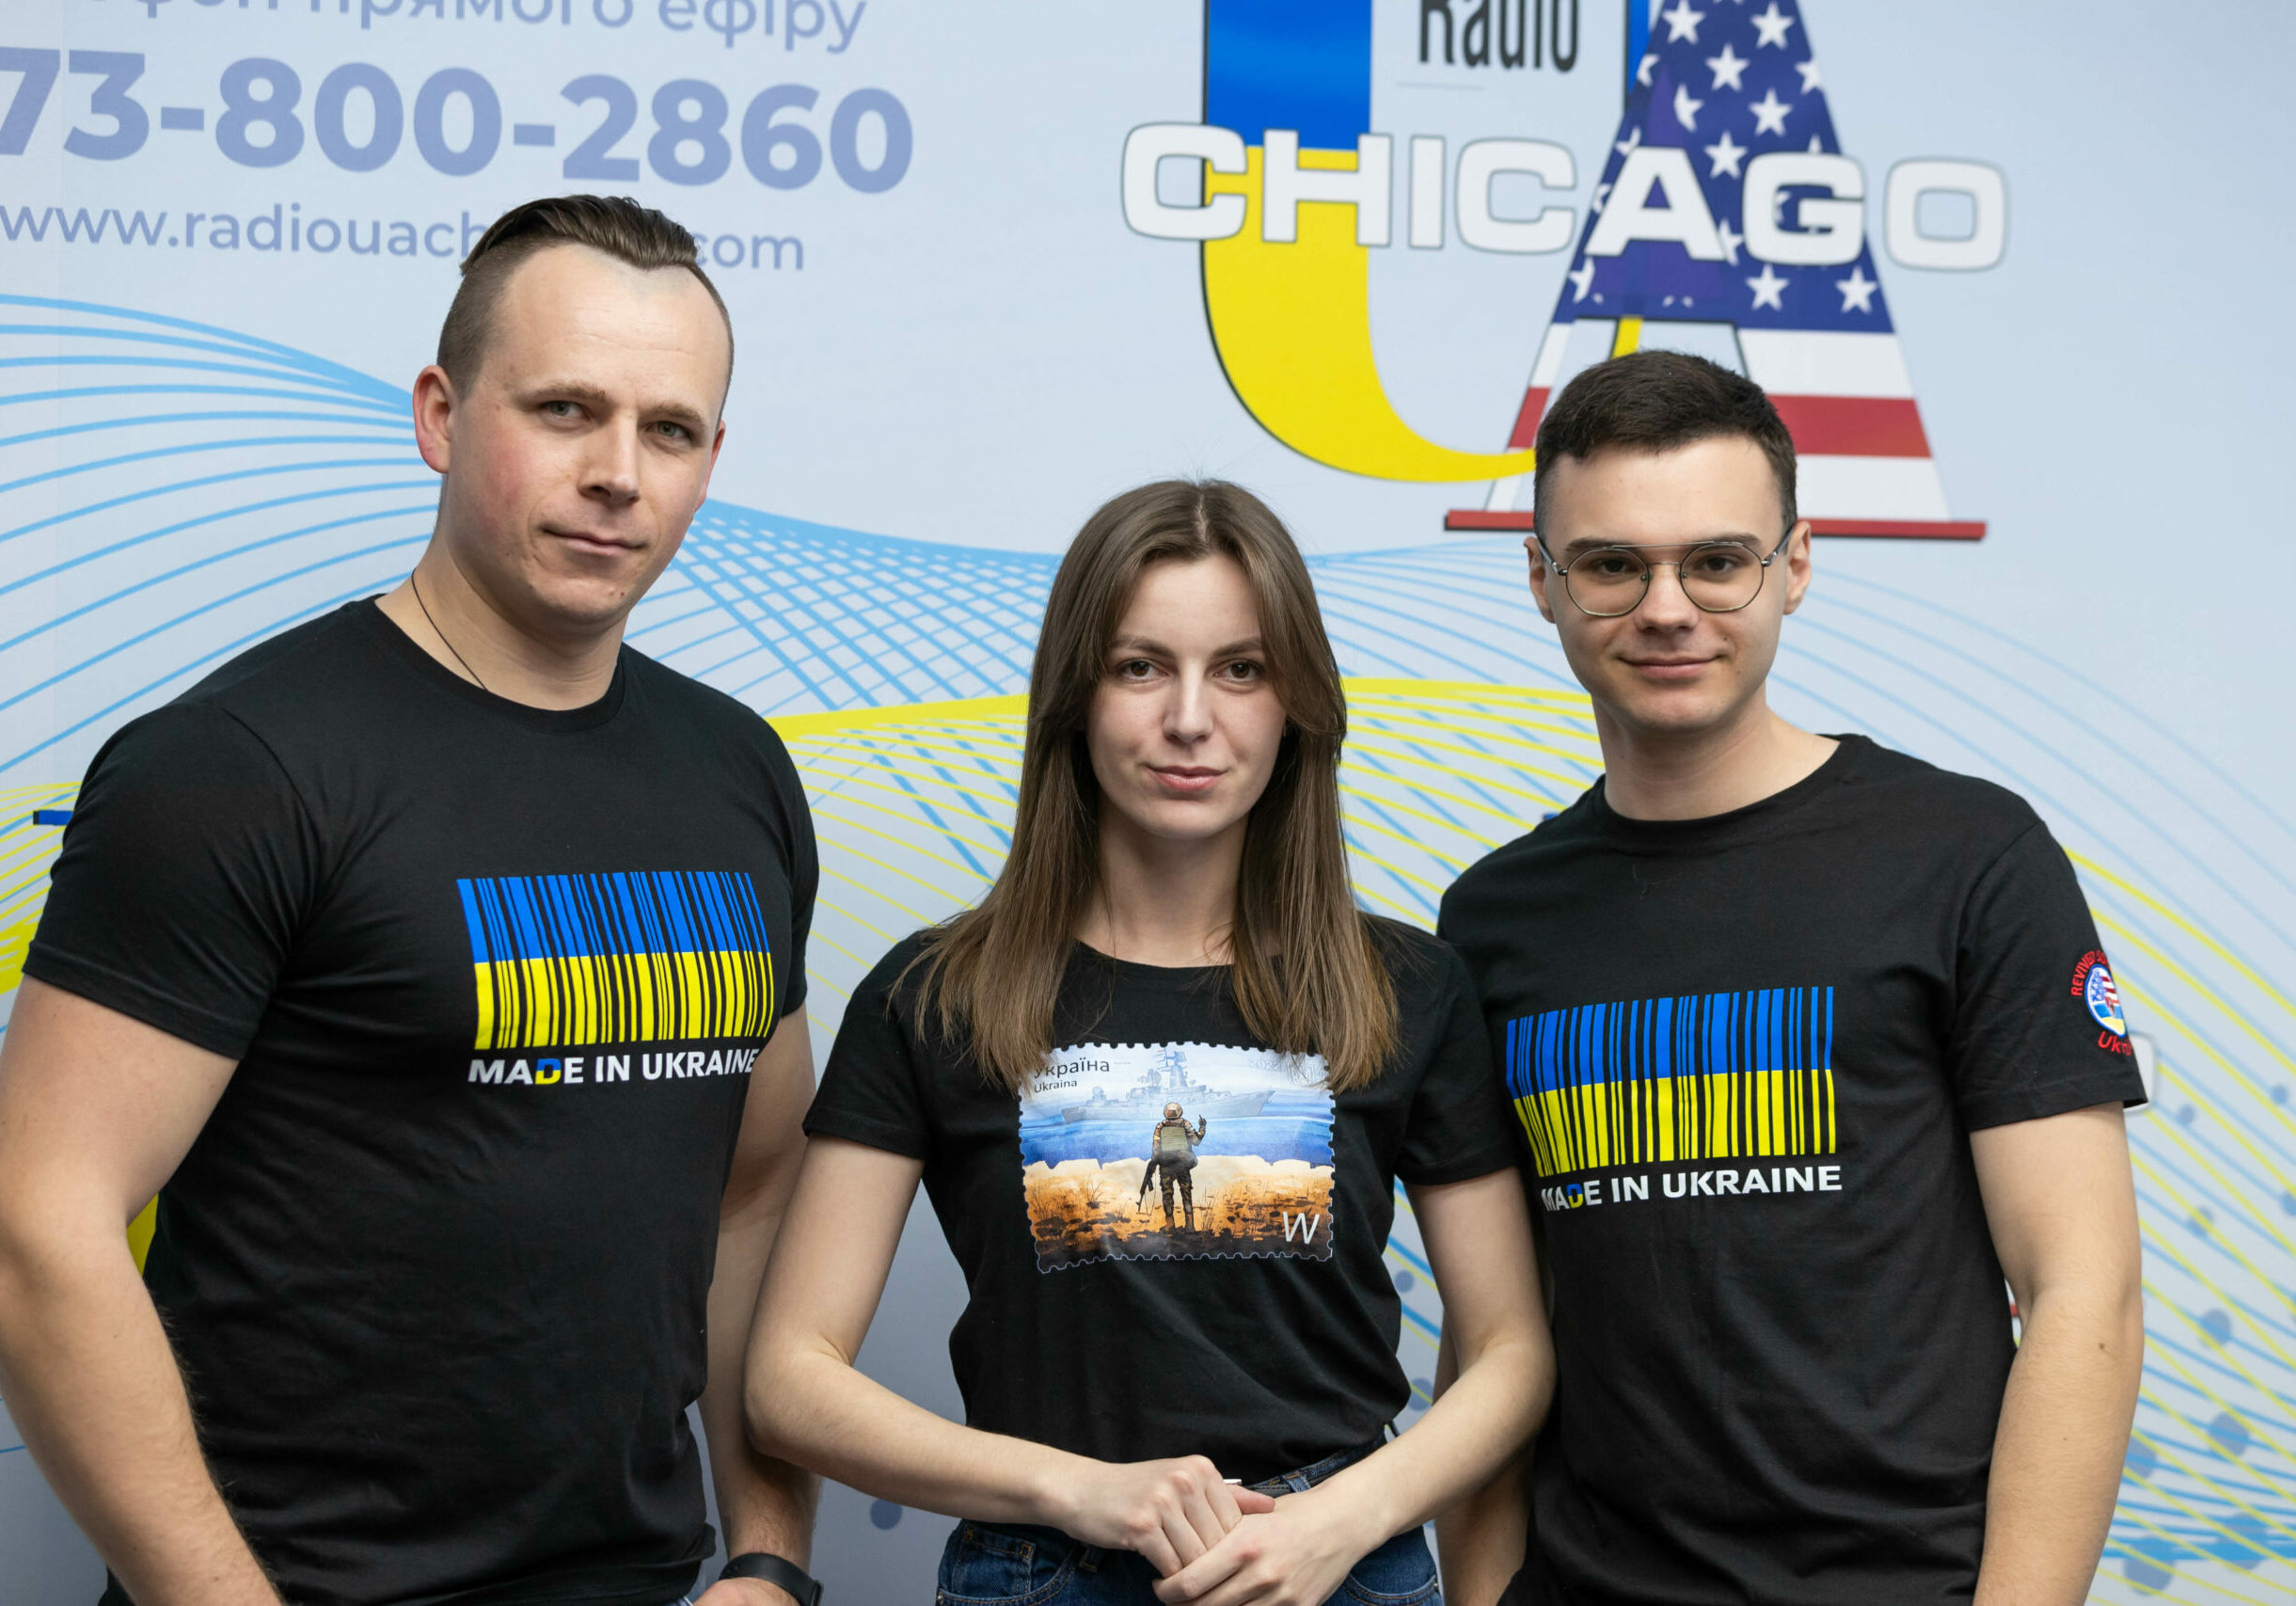 Ukrainian American Radio in Chicago, IL_-46